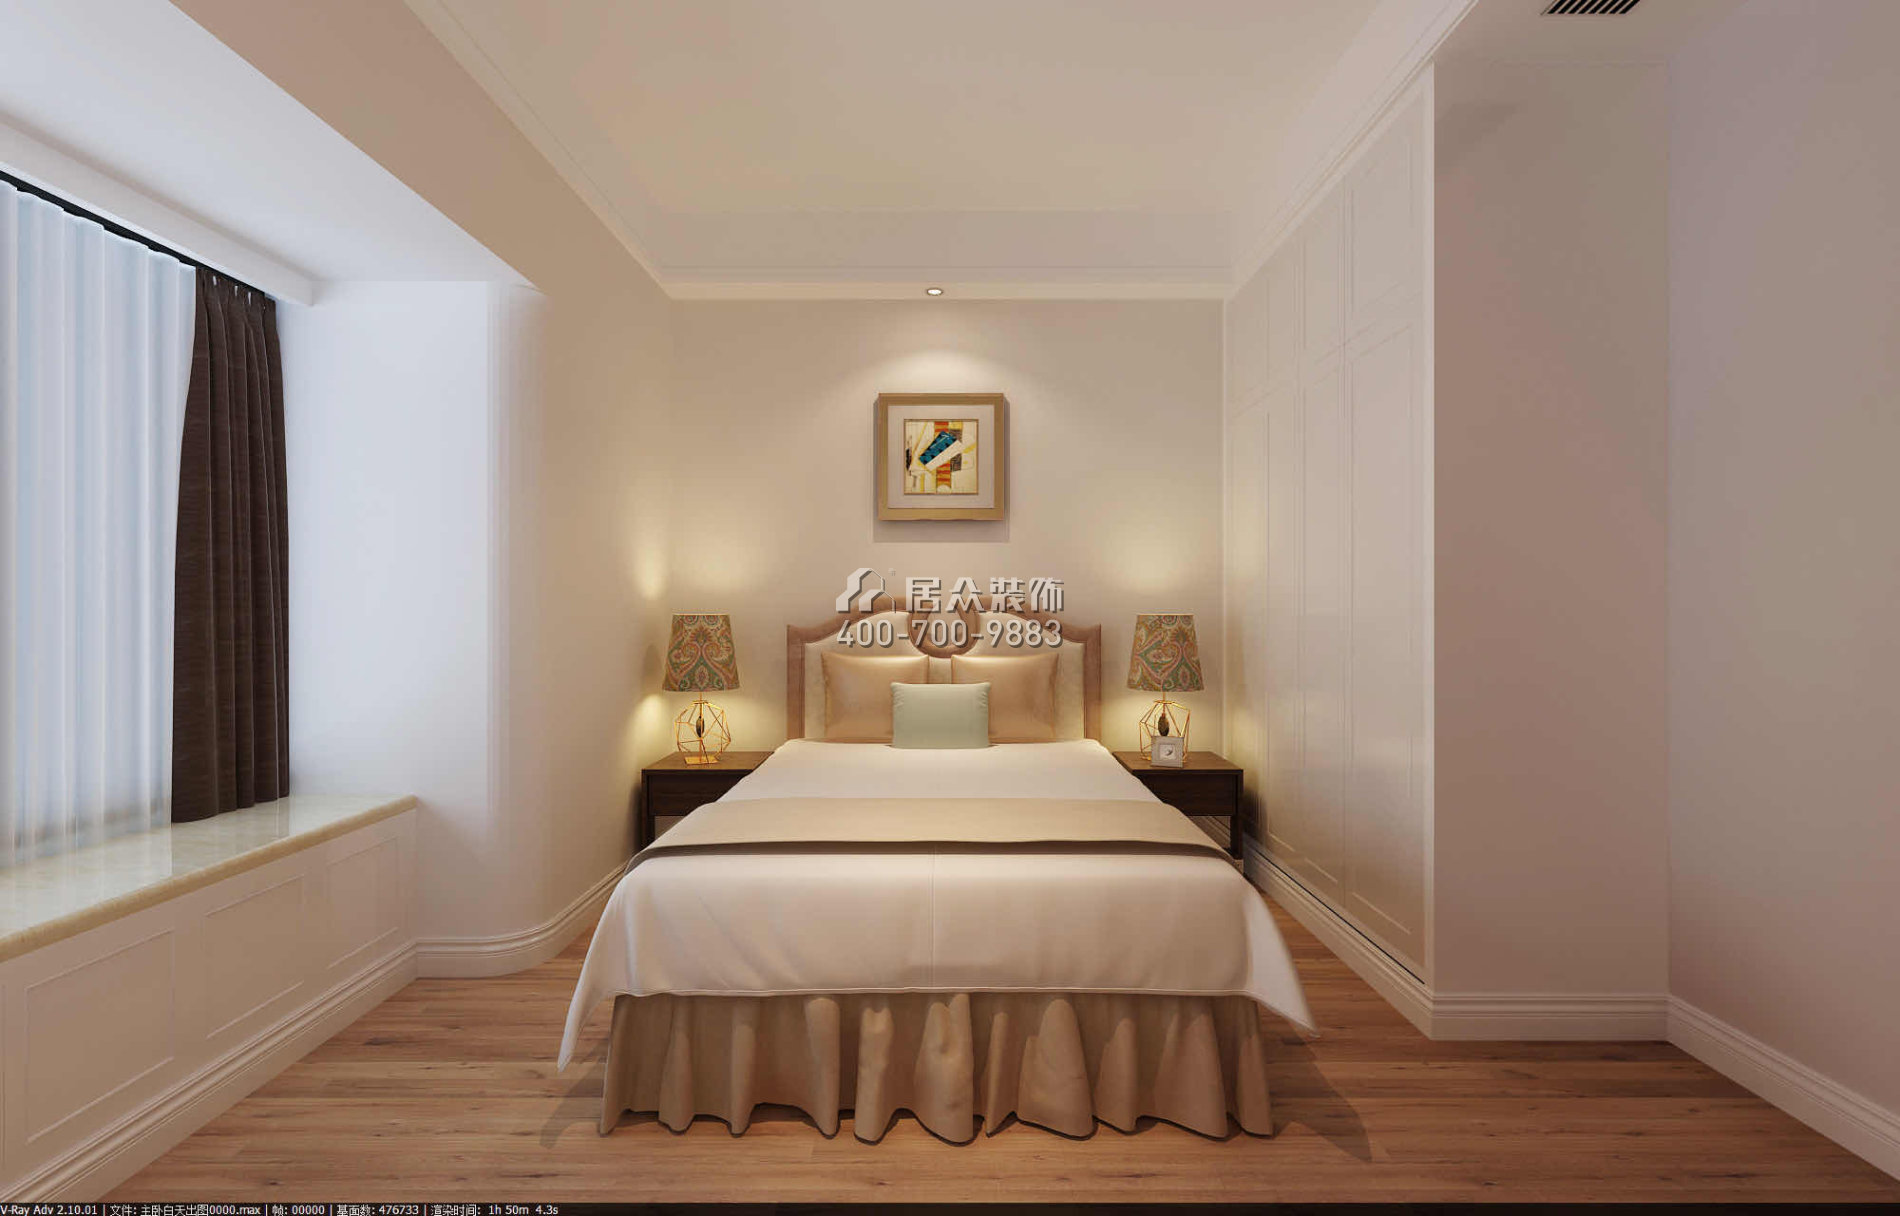 东景花园128平方米现代简约风格平层户型卧室装修效果图